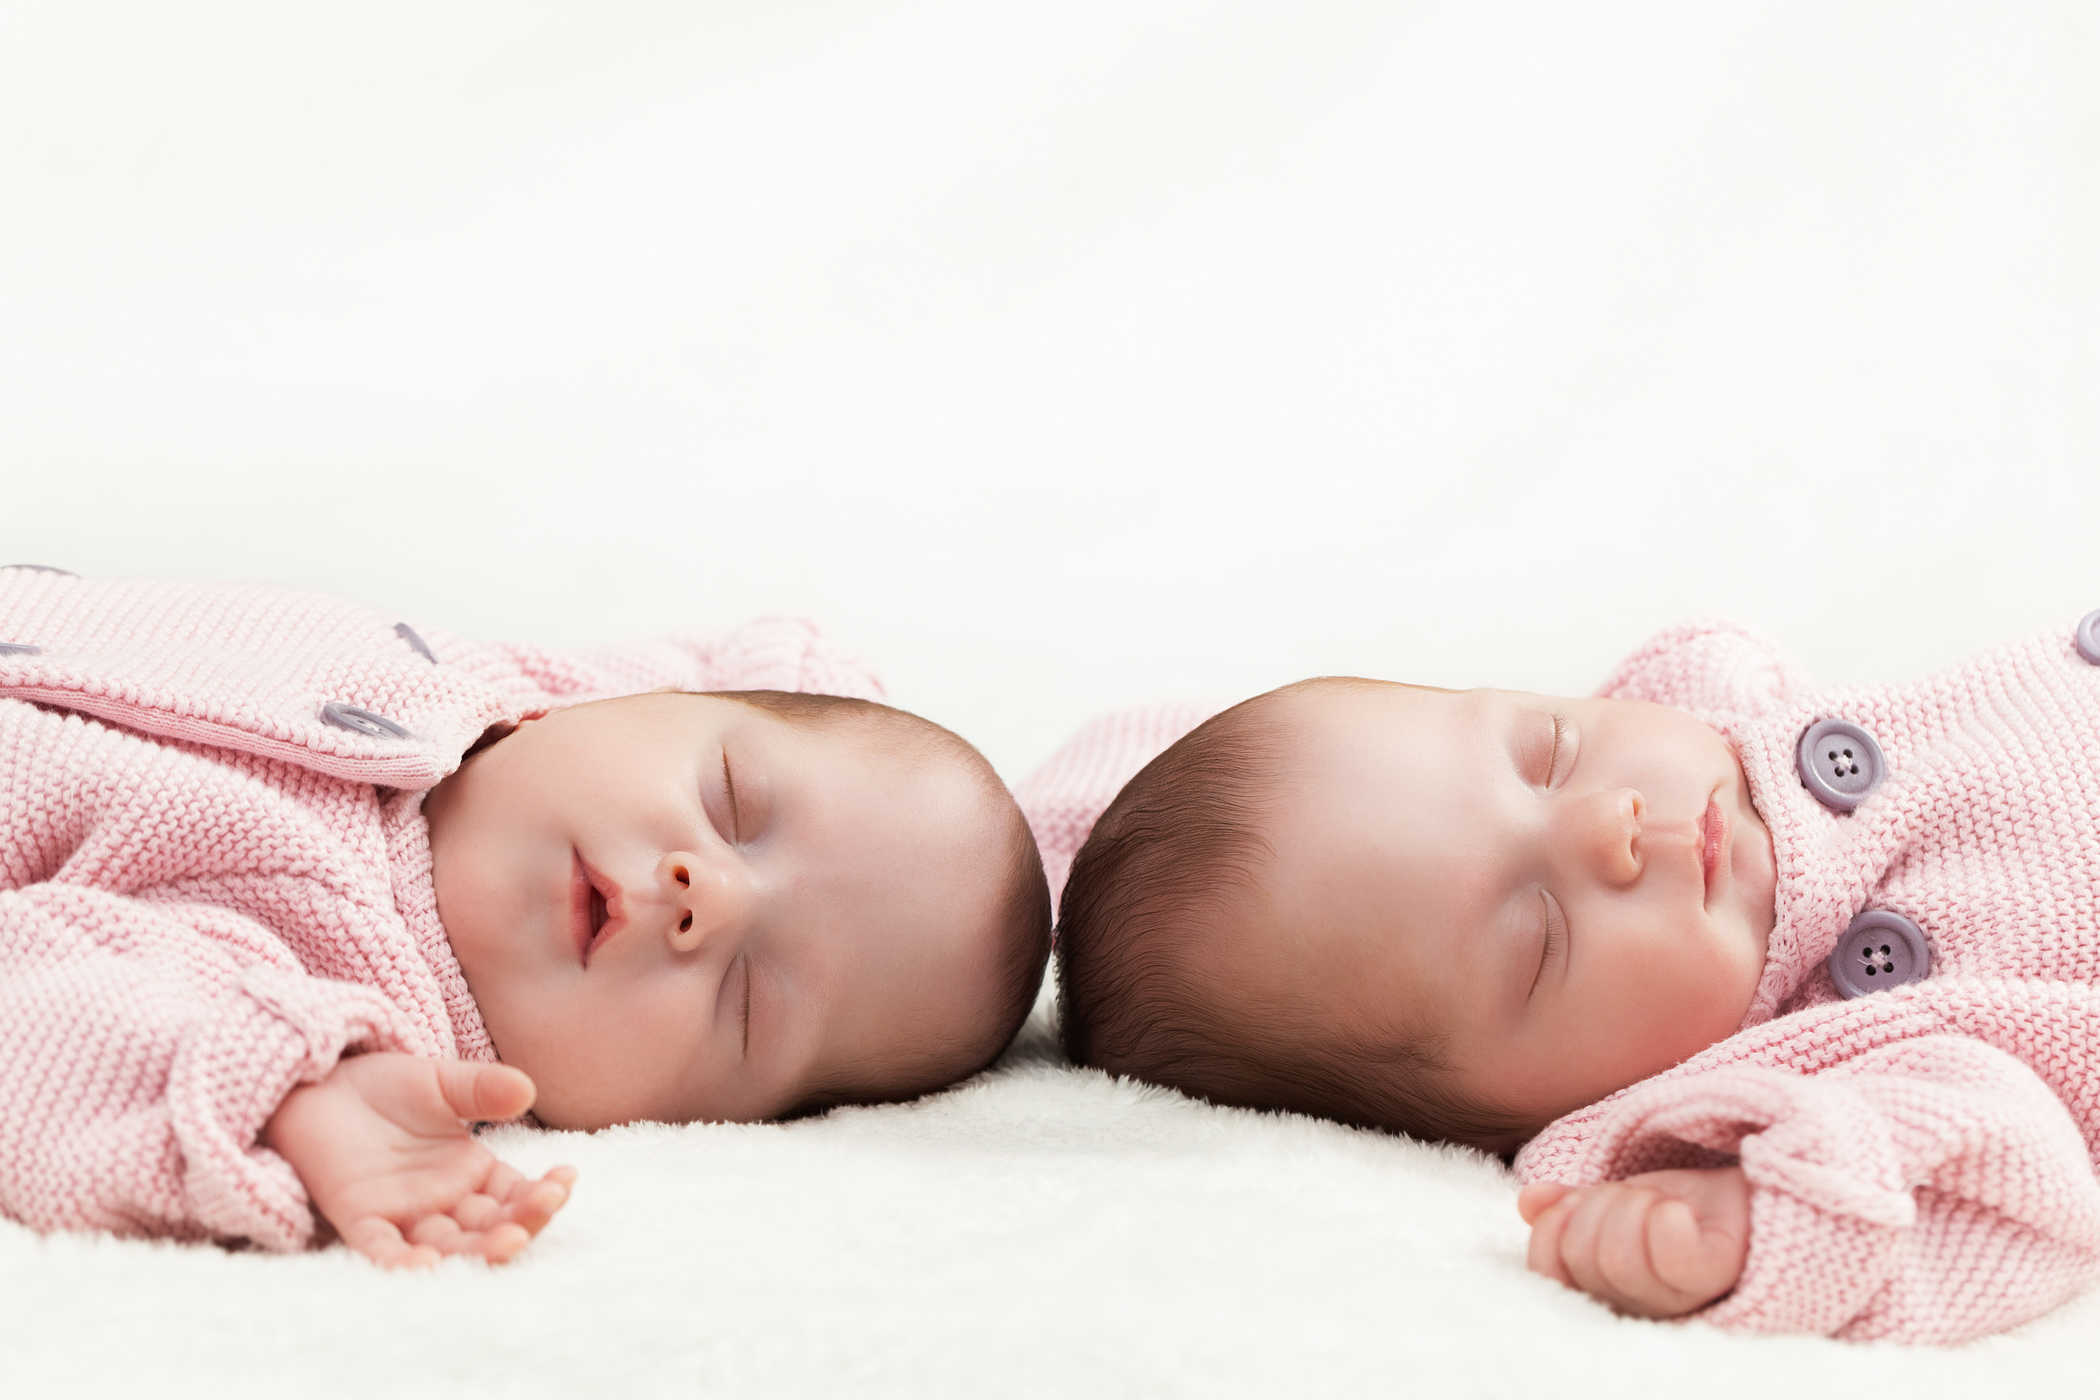 가족 중에 쌍둥이가 없는데 쌍둥이를 낳을 수 있습니까?